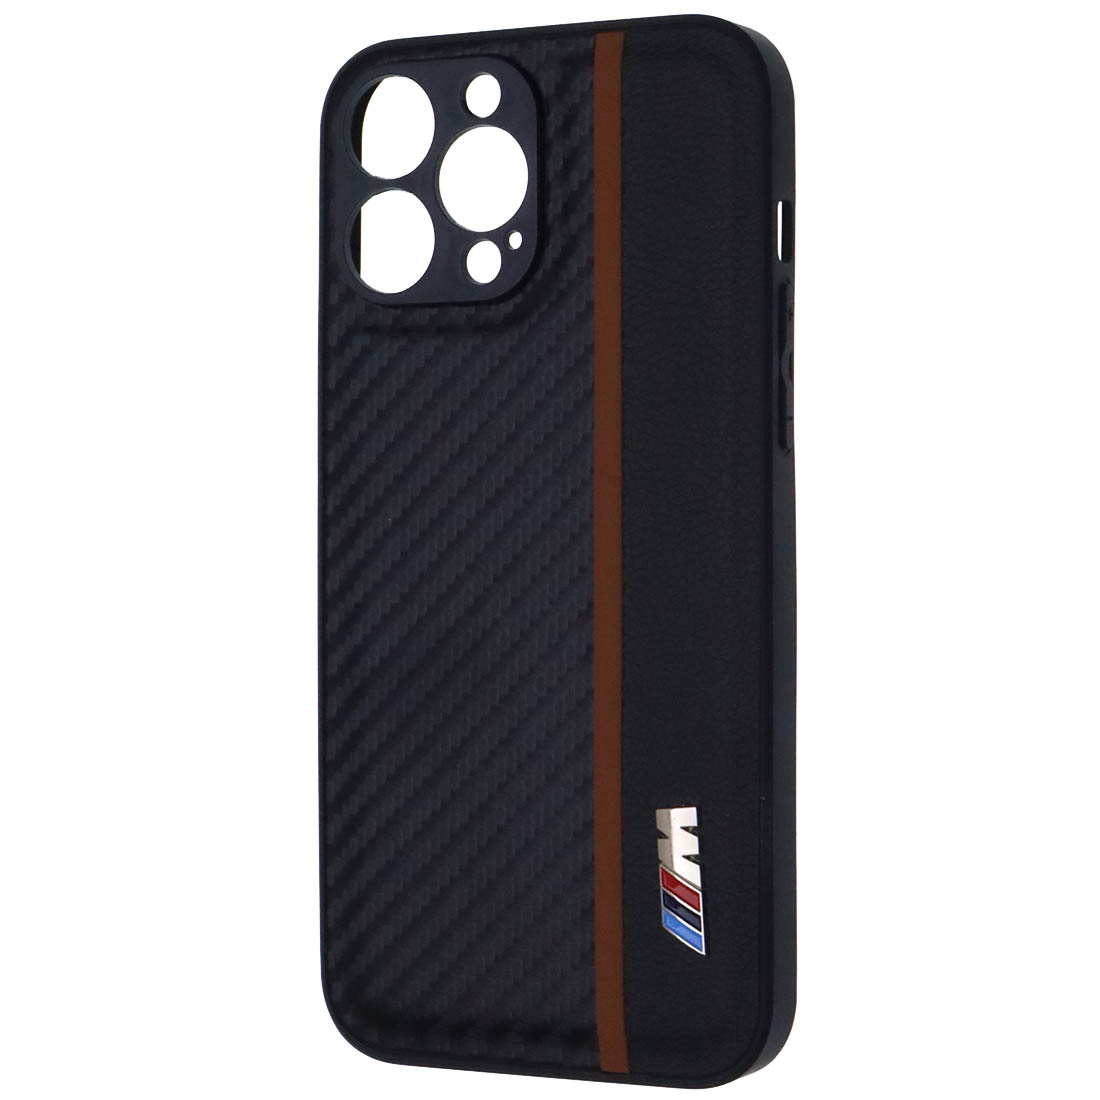 Чехол накладка для APPLE iPhone 13 Pro Max, силикон, карбон, экокожа, защита камеры, знак BMW M серии, цвет черный с коричневой полоской